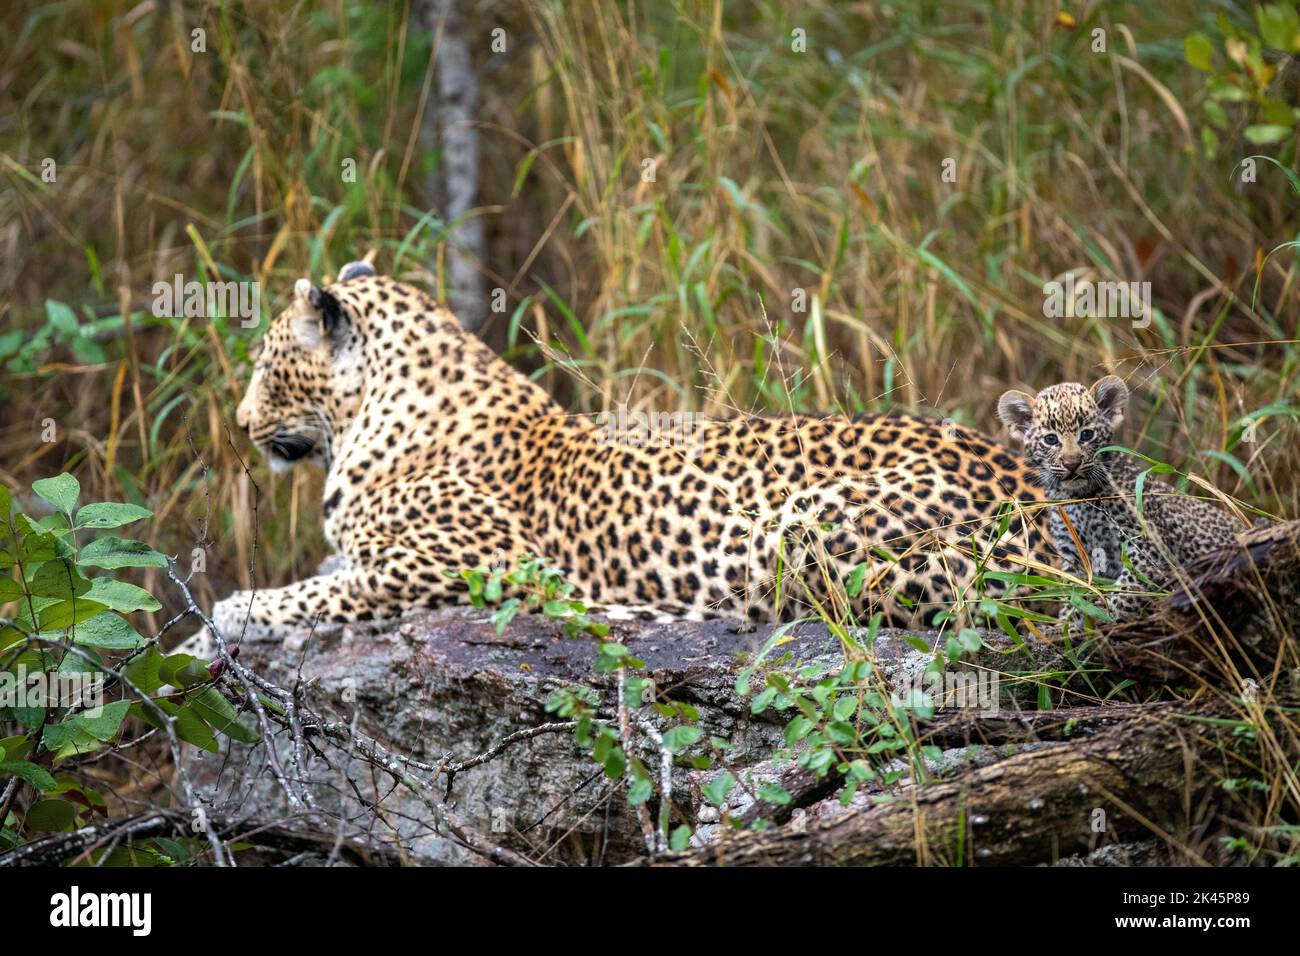 Un leopardo y su cachorro, Panthera pardus, yacen juntos en un tronco, mirada directa Foto de stock